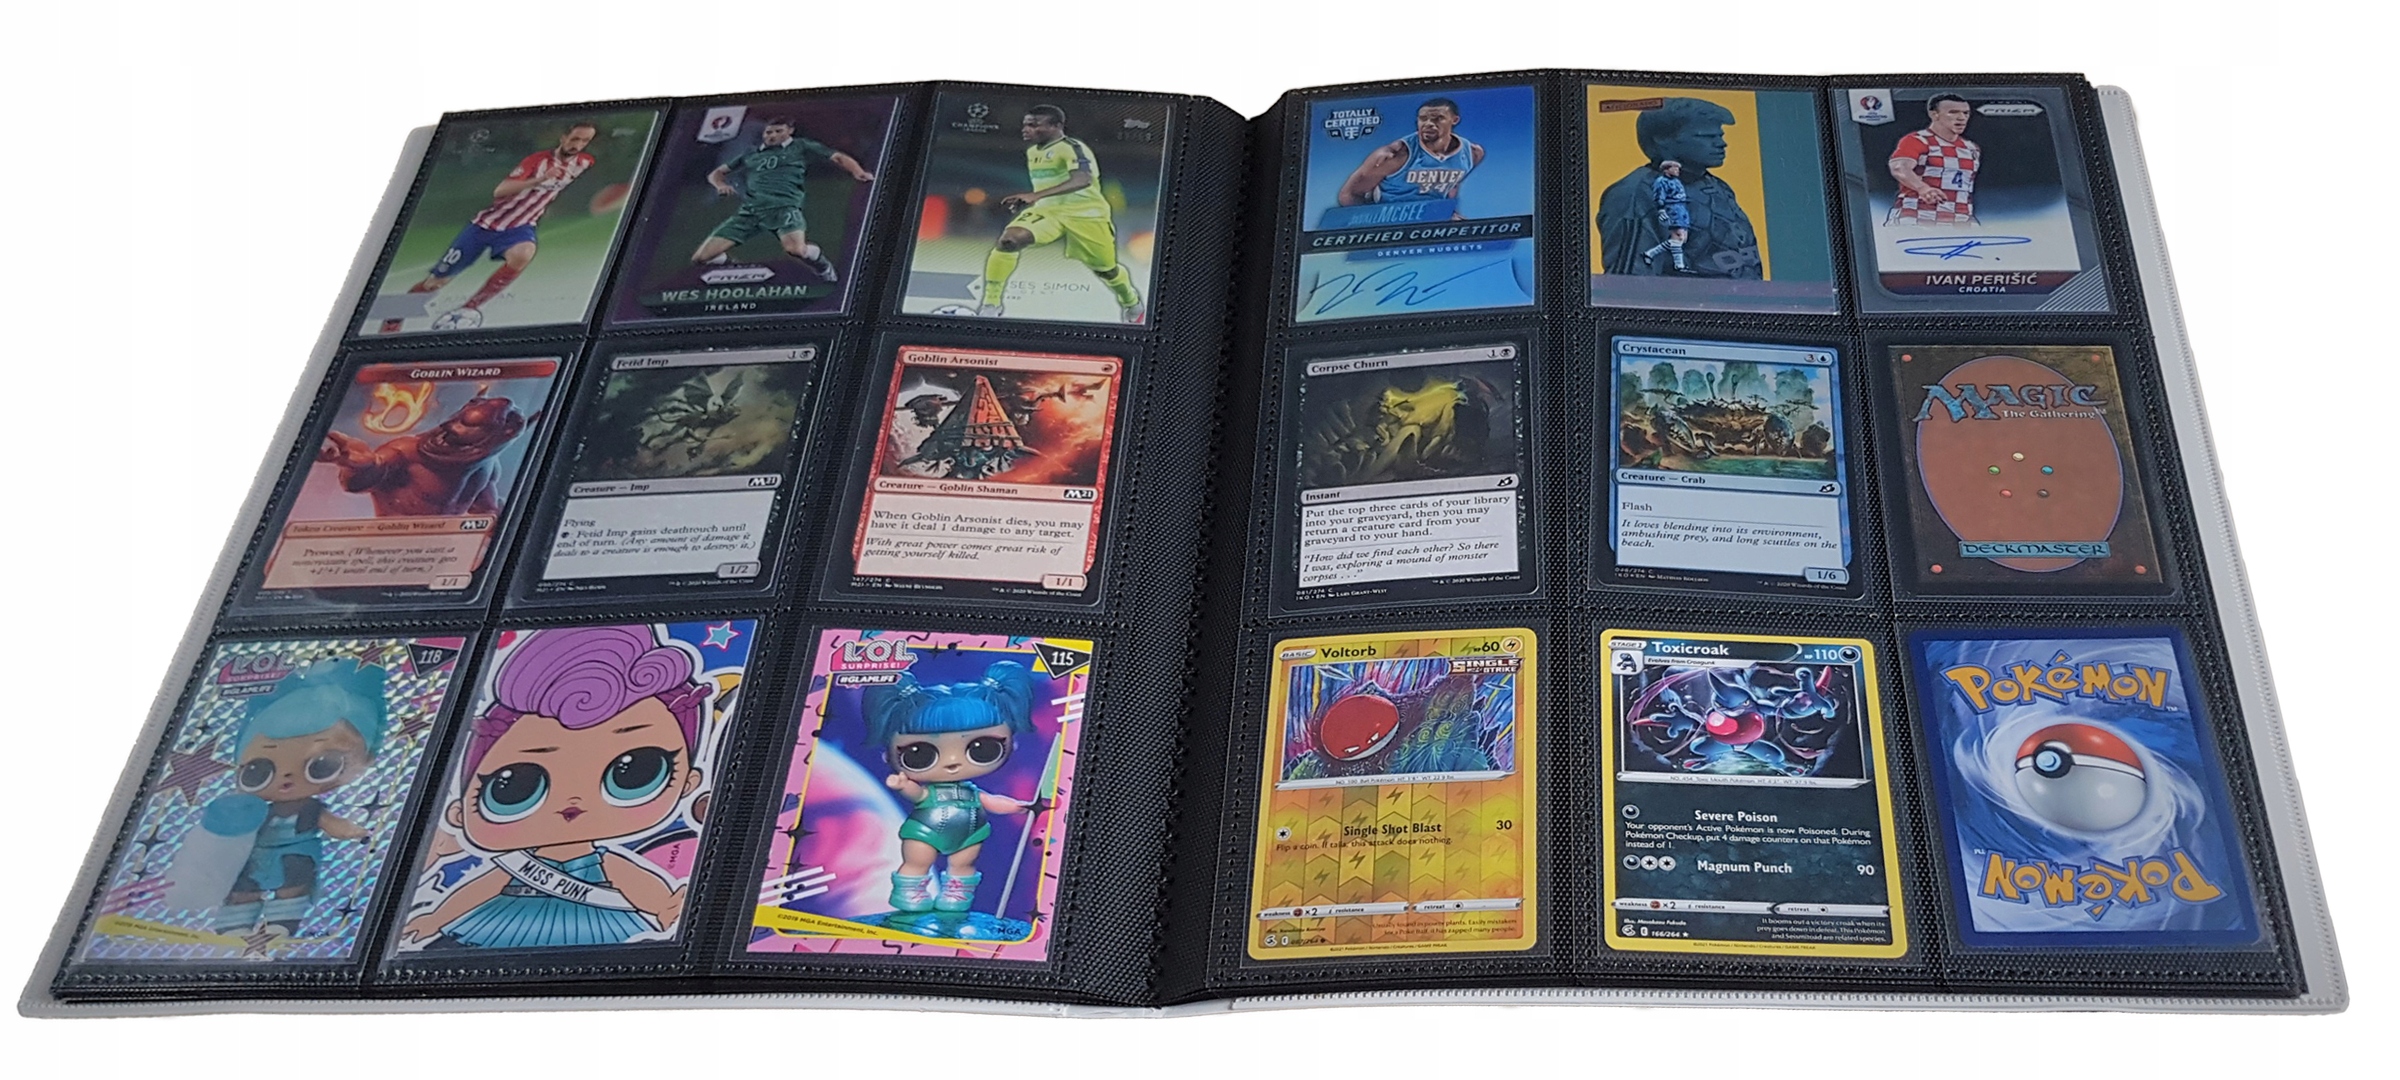 Classeur Livret Album Binder Pokémon 208 Cartes Pokémon Carnet